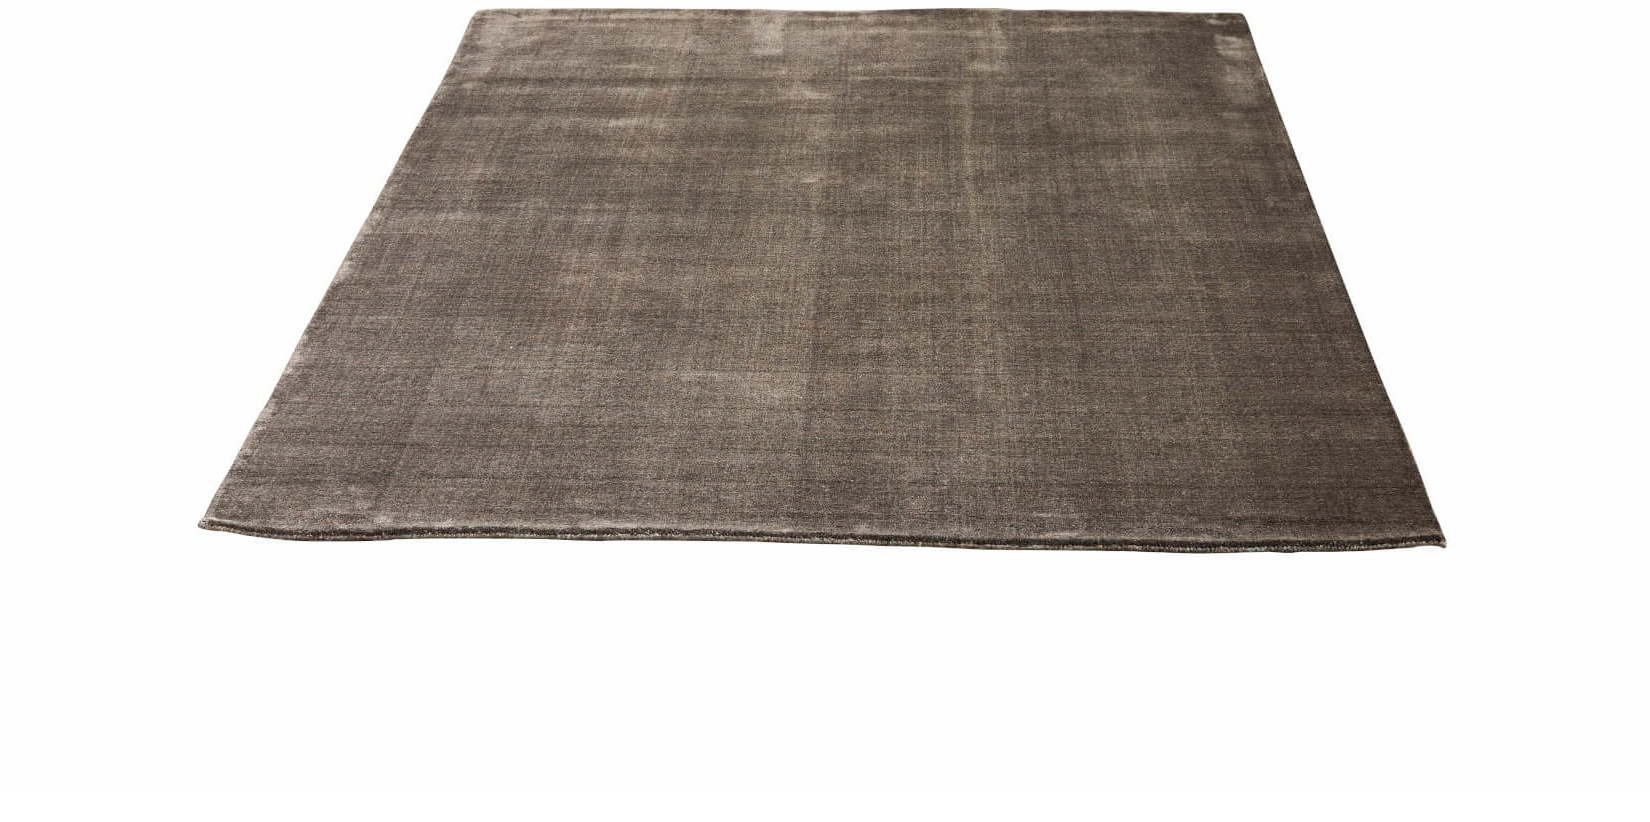 Earth Bamboo Teppich, 200 x 300 cm, wam grey